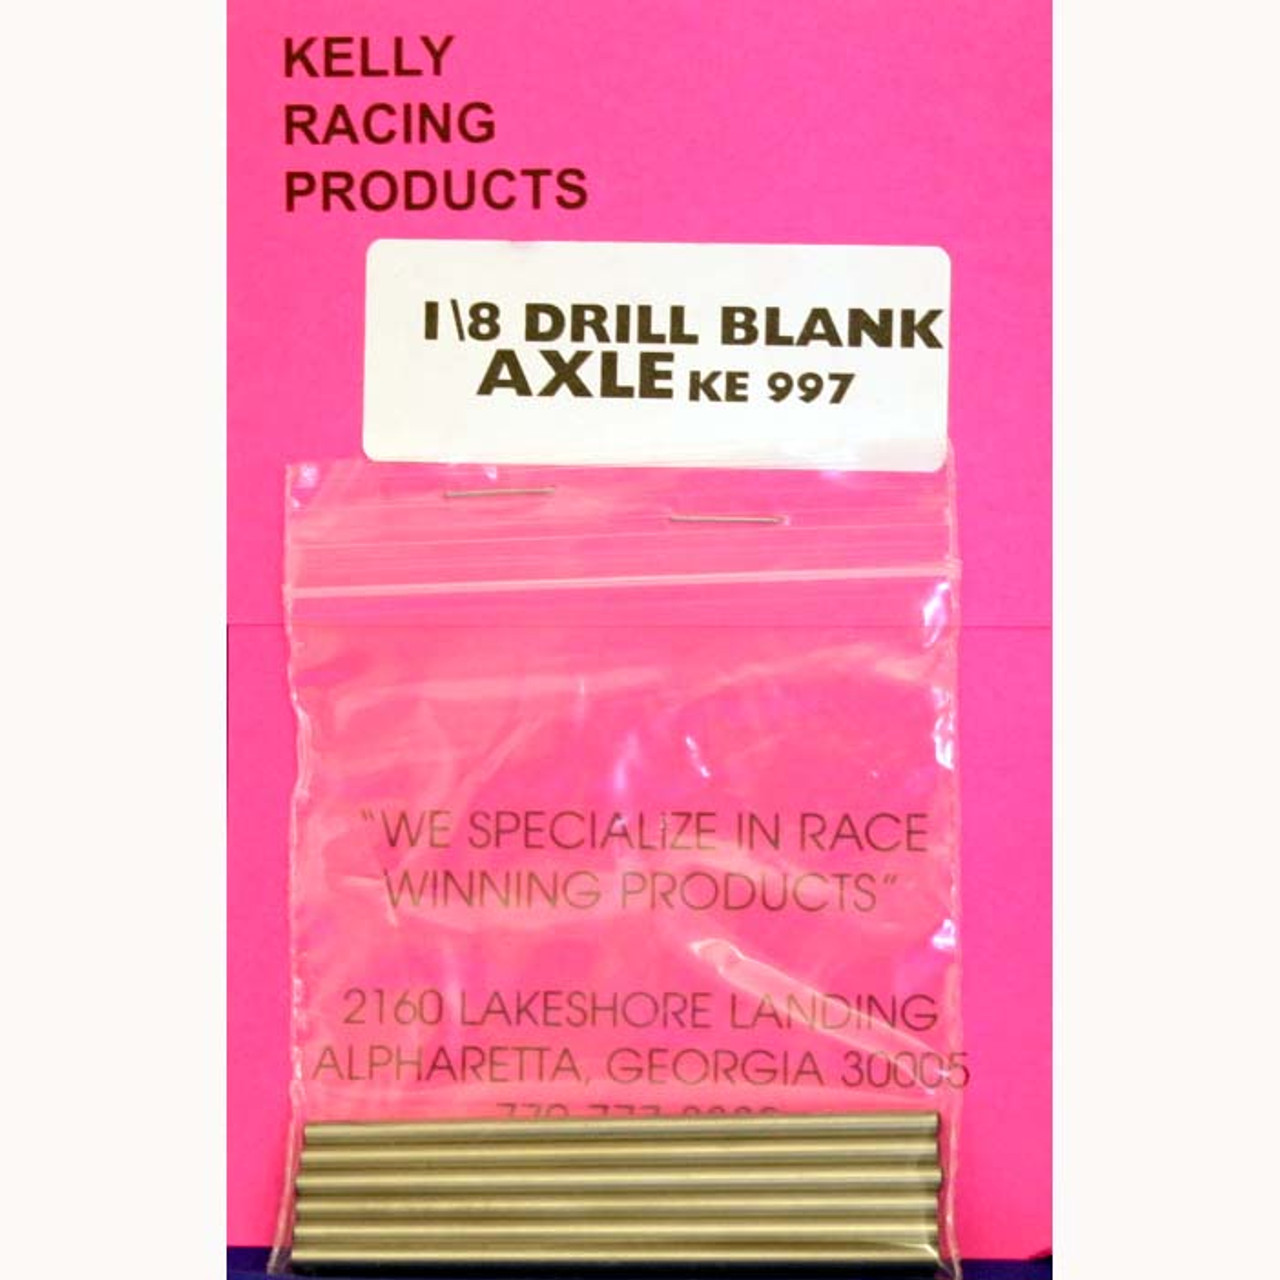 Kelly 1/8 Axle drill blank 2.75" Long 1 pc No Flats KE997